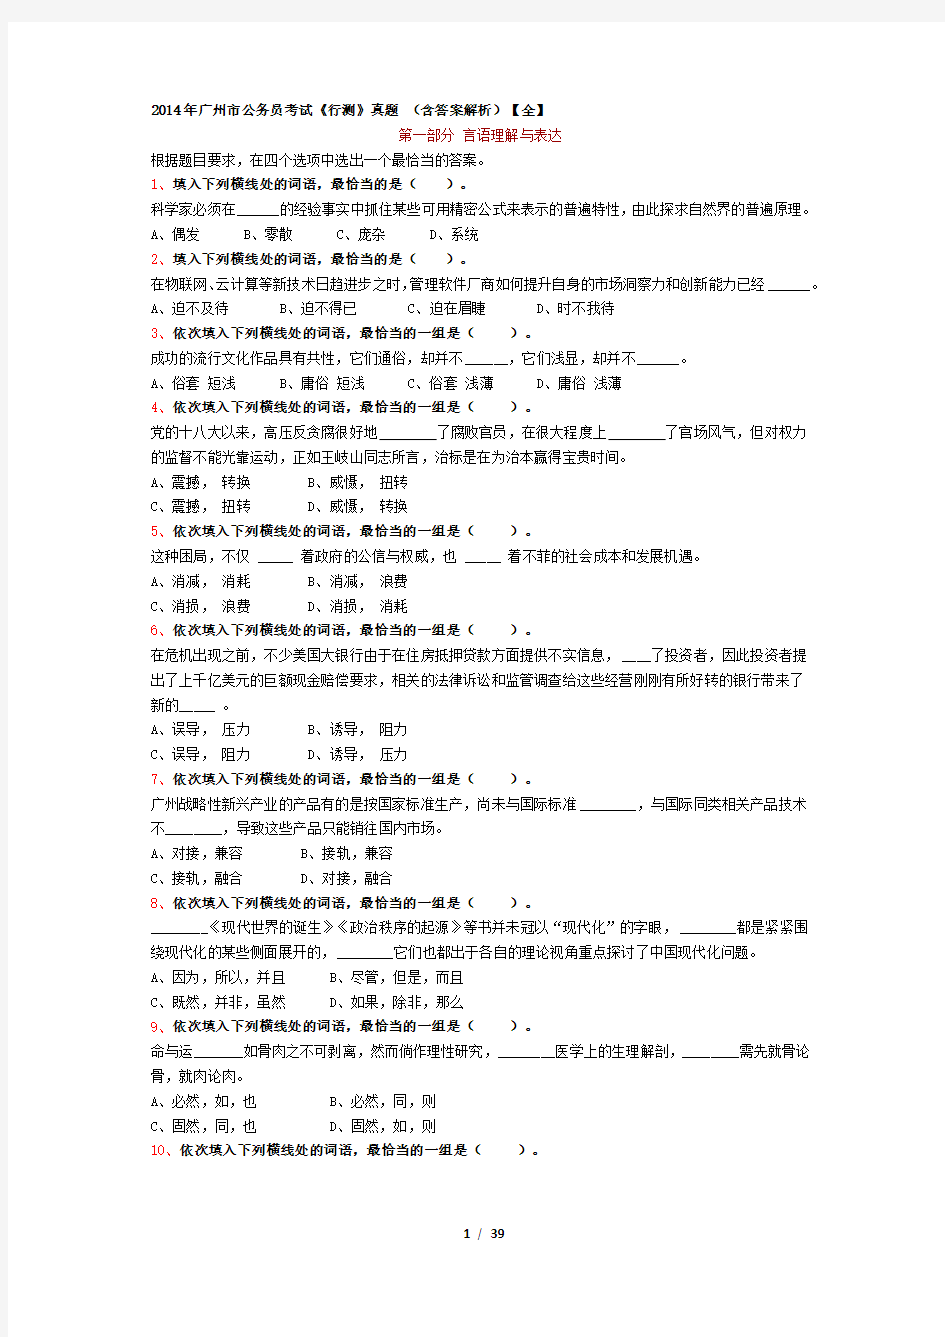 2014年广州市公务员考试《行测》真题 (含答案解析)【全】